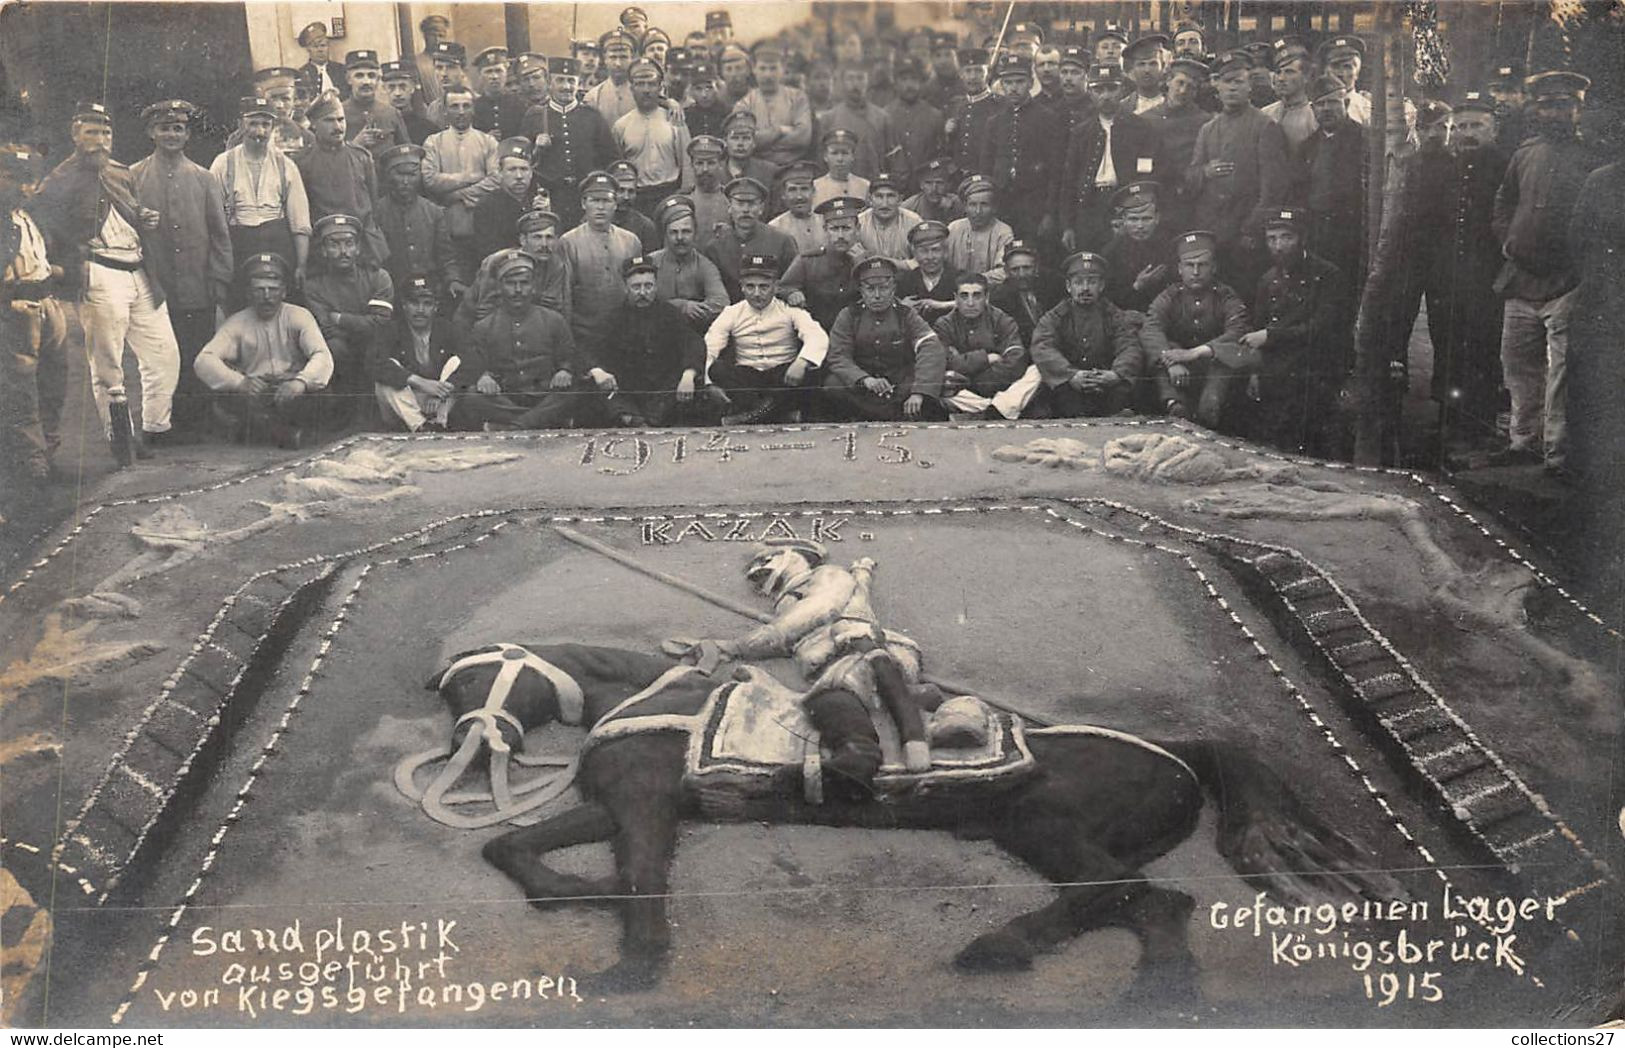 KÖNIGSBRÜCK-CARTE-PHOTO- 1915 GEFANGENEN LAGER - Camp De Prisonniers- SAND PLASTIK AUSGETÛHRT VON KIEGSGETANGENEN - Koenigsbrueck